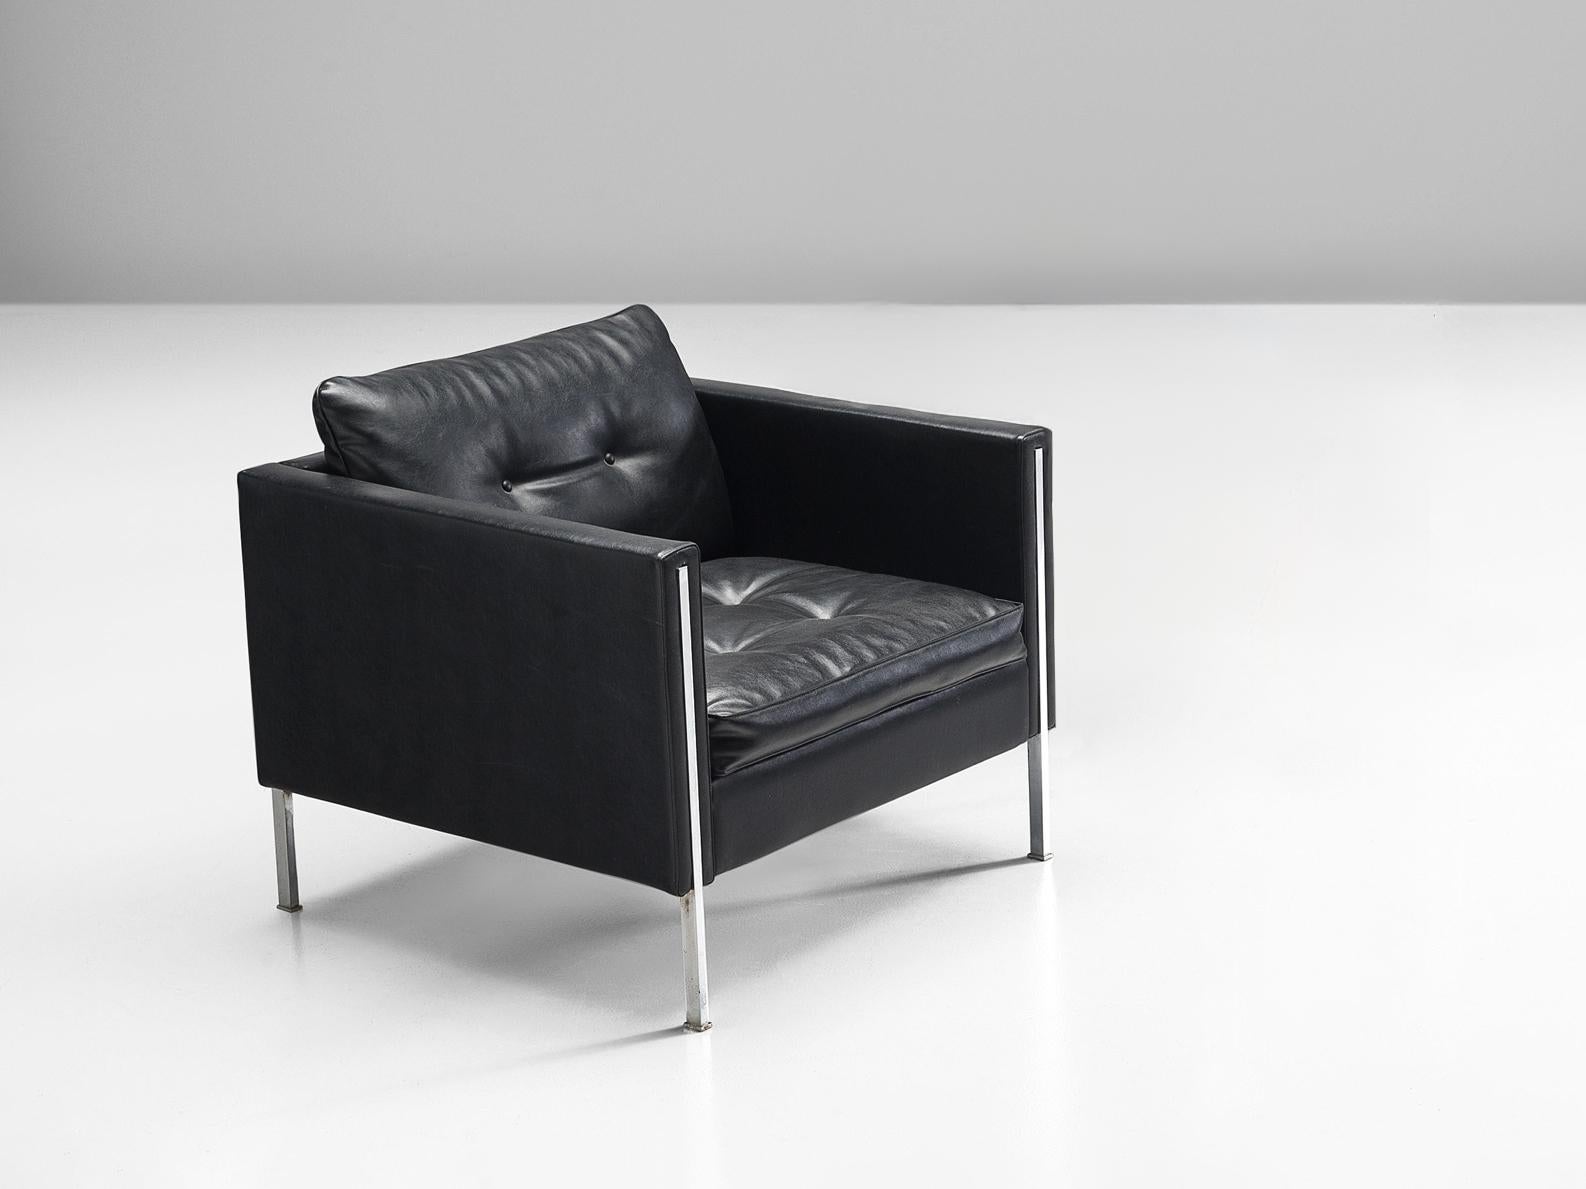 Pierre Paulin pour Artifort, chaise longue, modèle '442/3', cuir, acier, Pays-Bas 1962.

Un design de Pierre Paulin qui rayonne d'un look minimaliste moderne, caractérisé par une géométrie simple et des contours clairs. La combinaison des matériaux